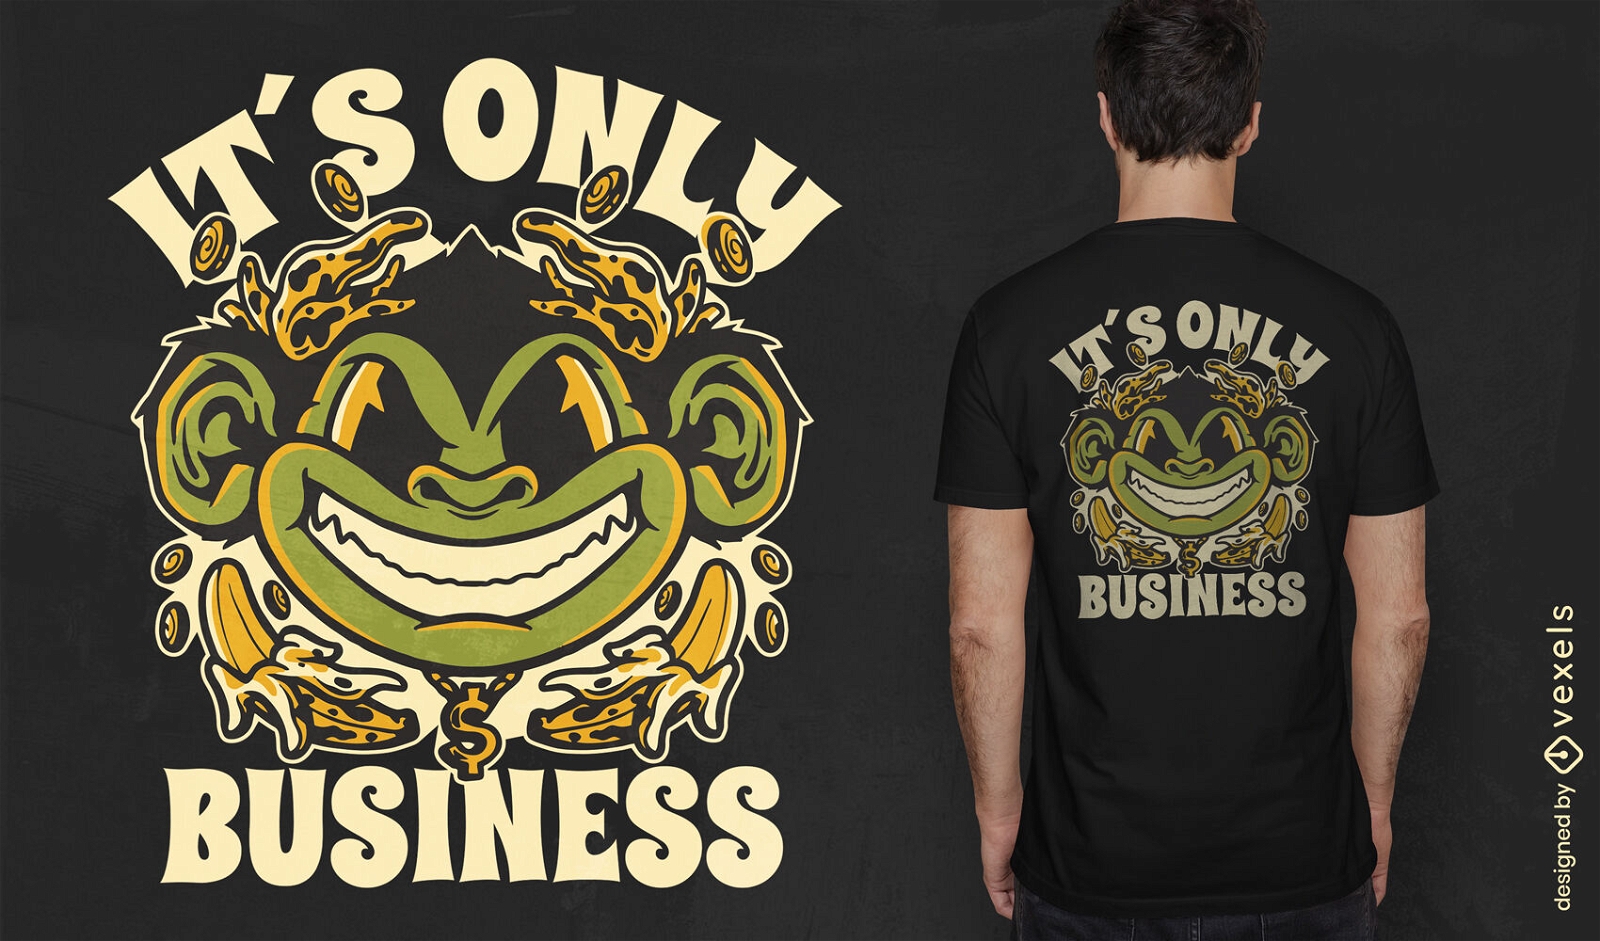 Es solo un dise?o de camiseta de mono de negocios.